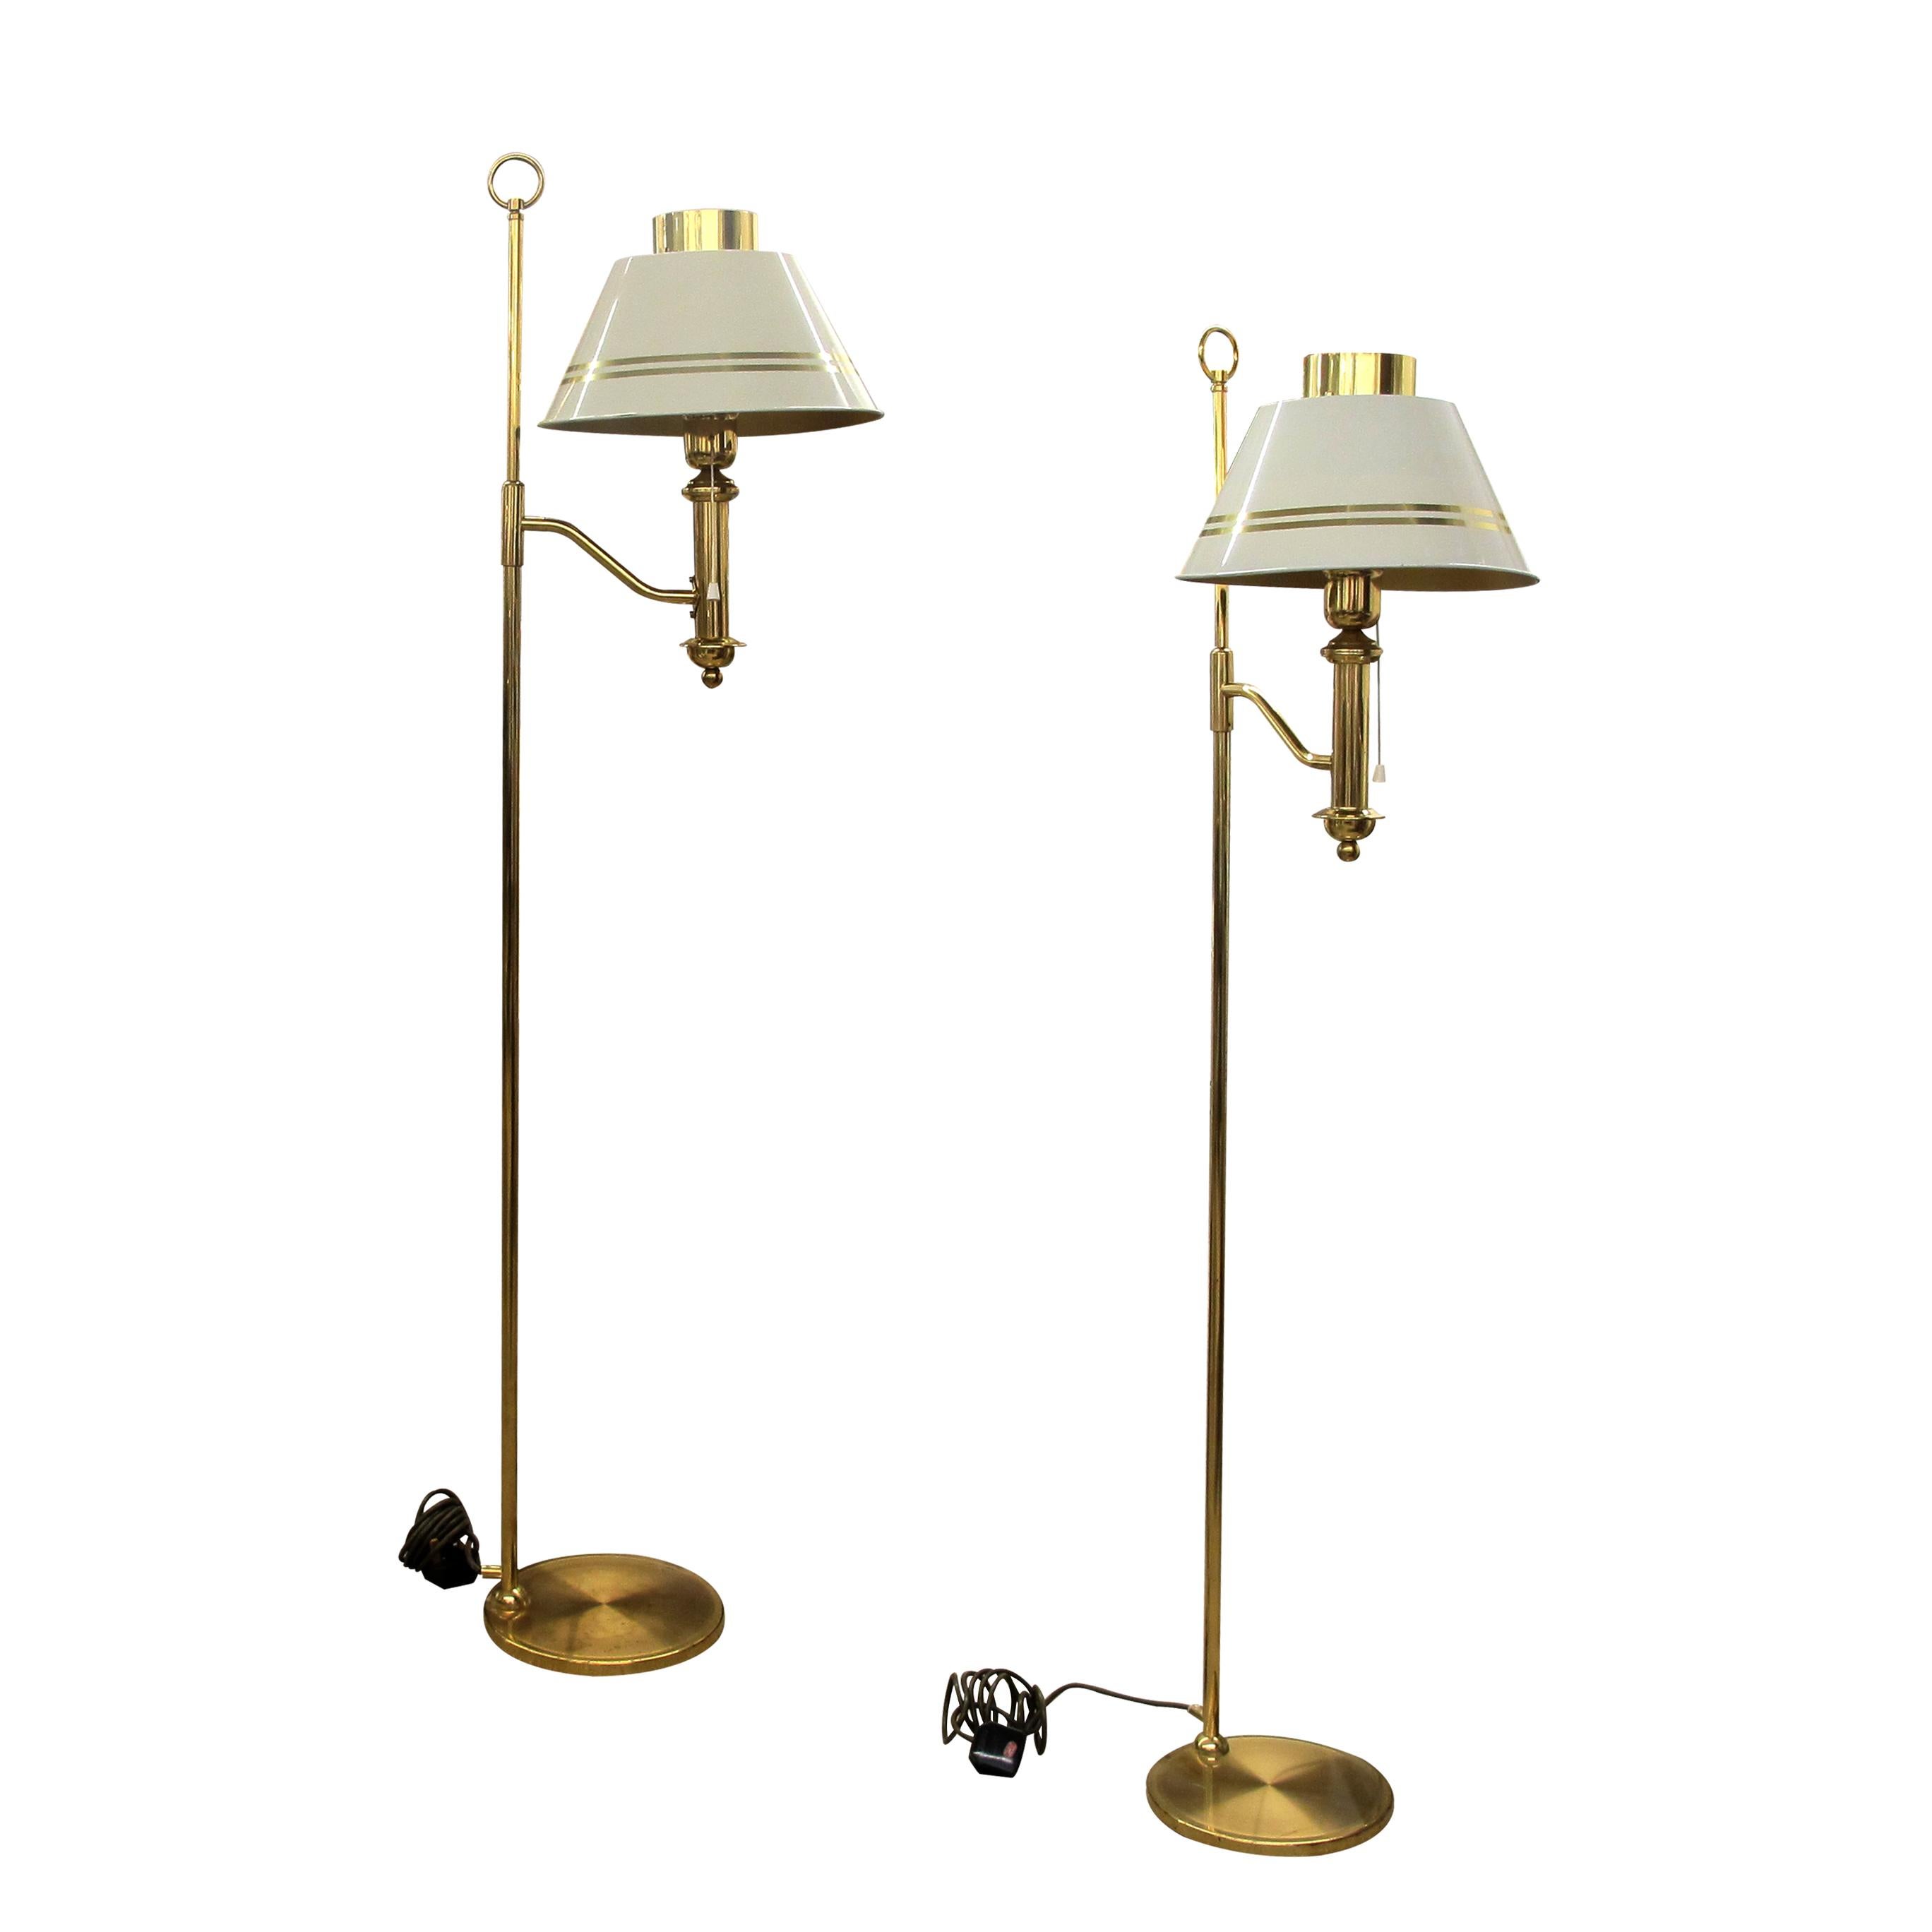 Ein Paar elegante Stehlampen aus den 1970er Jahren mit weißen Metallschirmen. Jede Leuchte hat ihren eigenen maßgeschneiderten weißen Metallschirm. Der An- und Ausschalter wird mit einer Zugschnur betätigt. Die Lampen sind in gutem Zustand mit